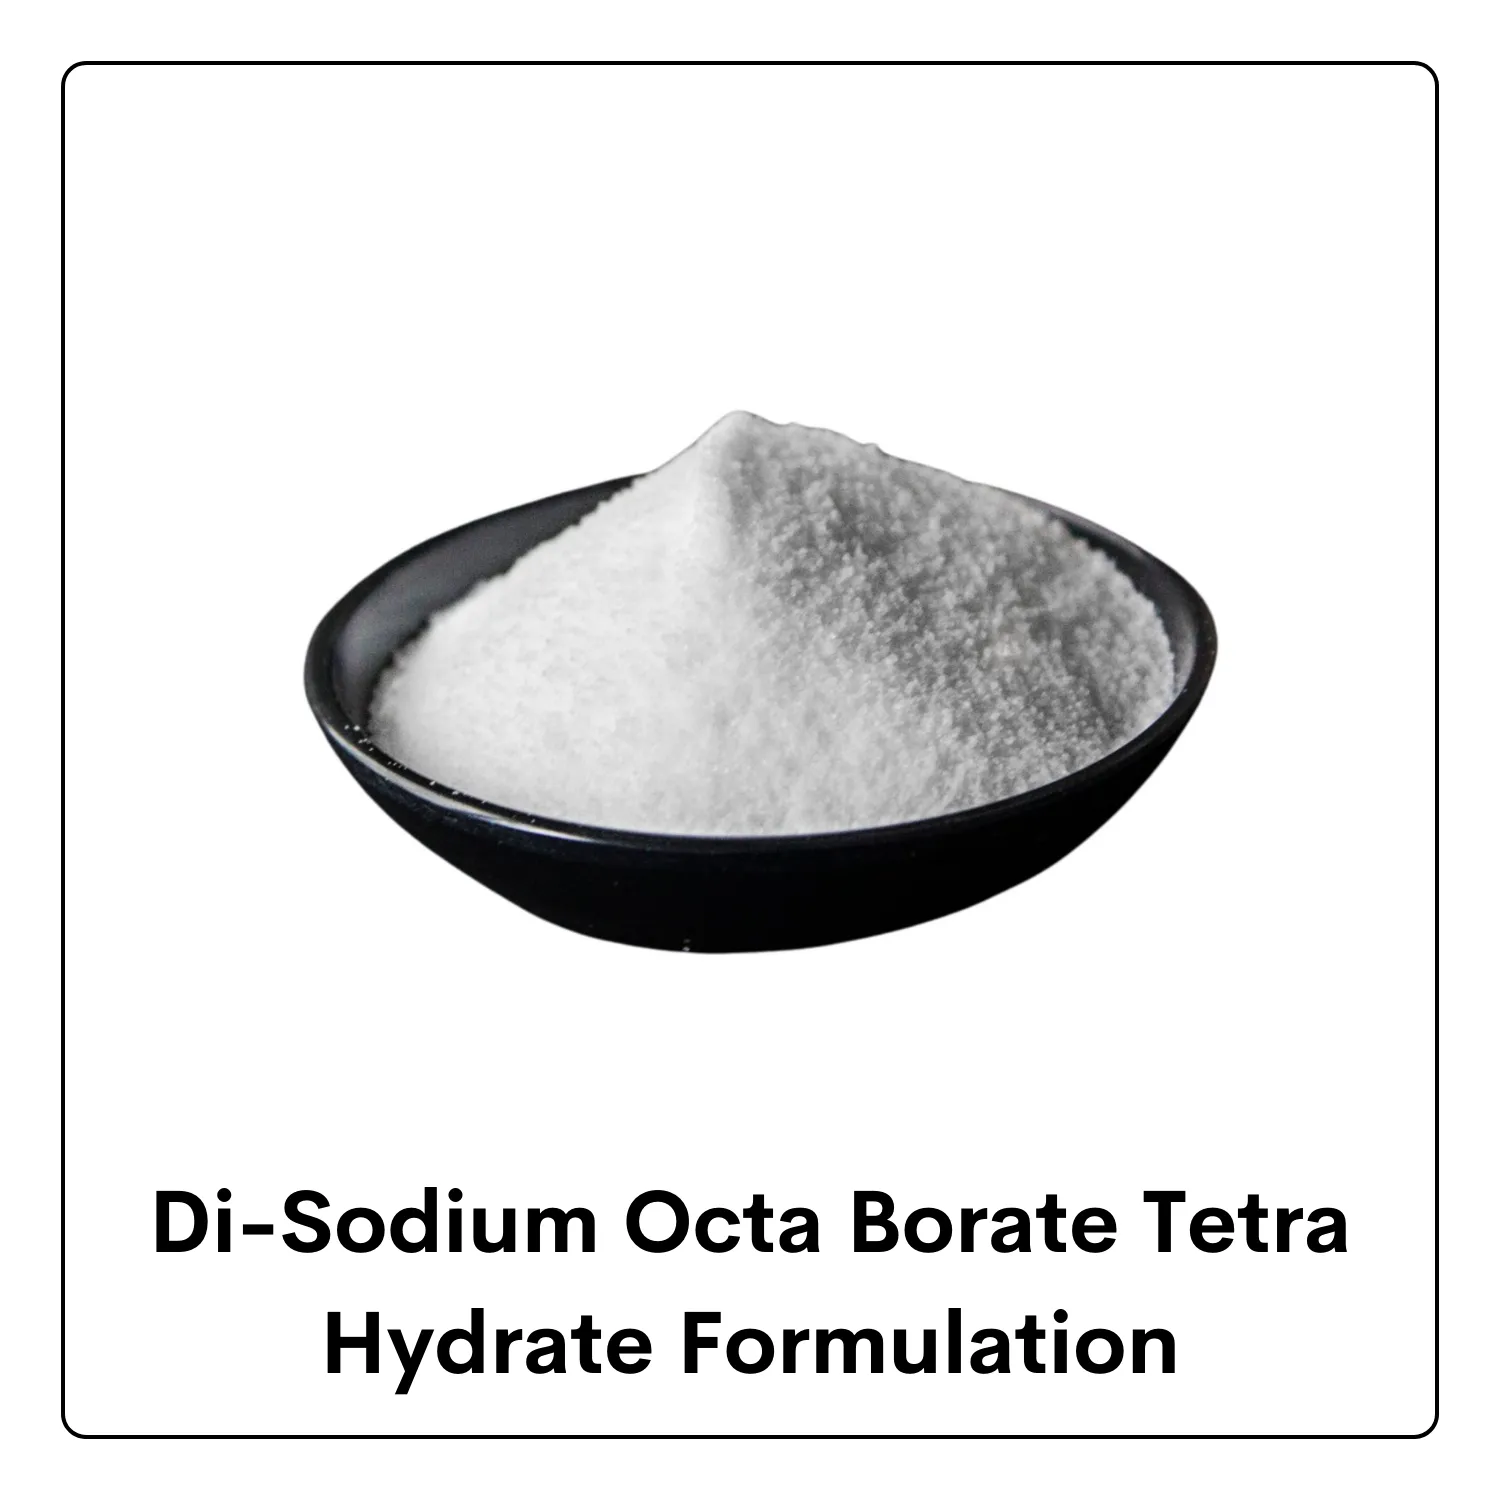 Di-Sodium Octa Borate Tetra Hydrate